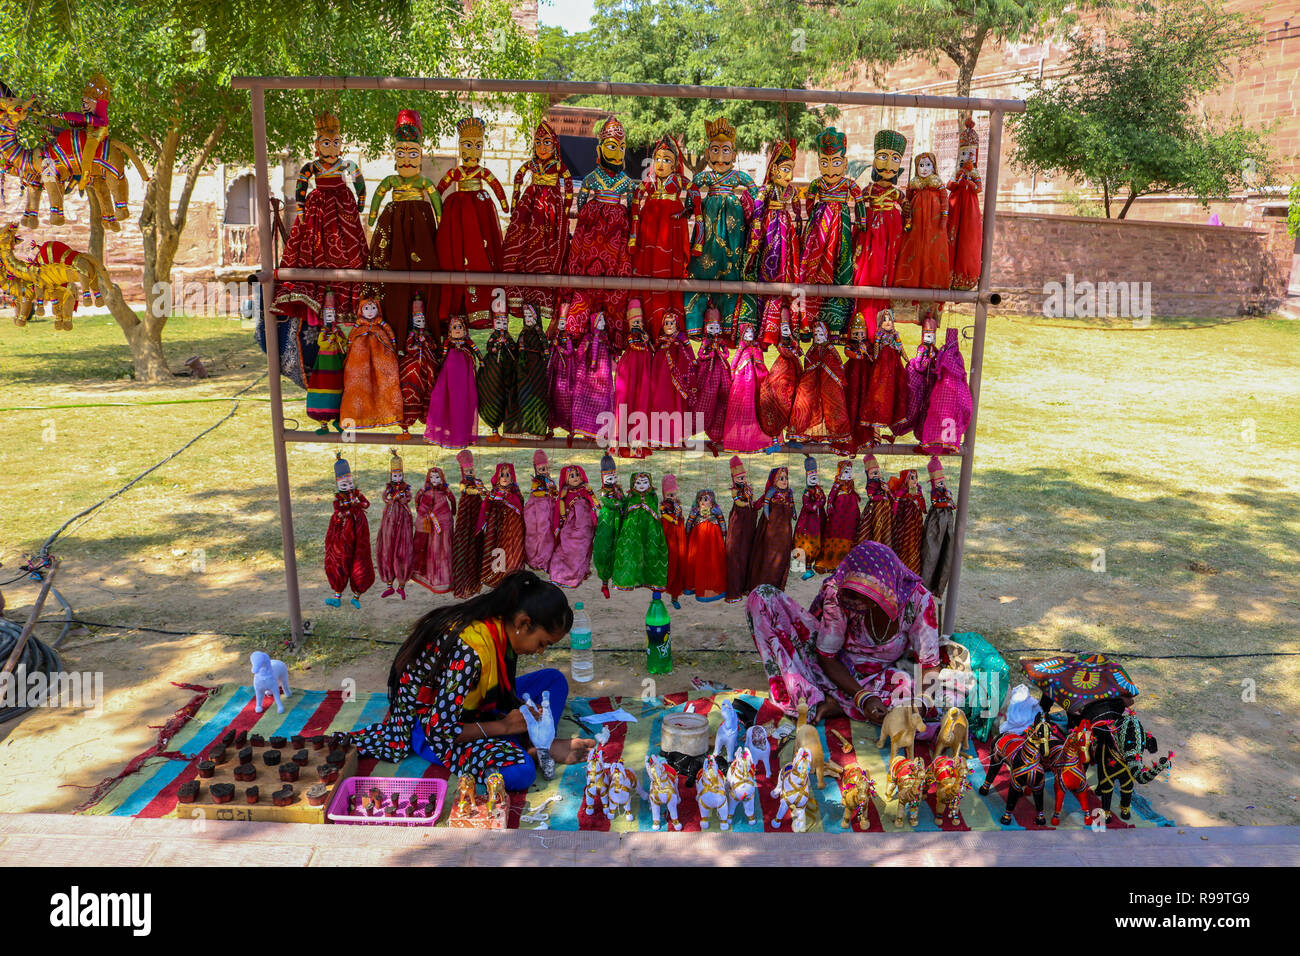 Les femmes indiennes Kathputli Rajasthani (marionnettes) à une boutique de la rue, Jodhpur, Rajasthan Mehrangarh. Banque D'Images